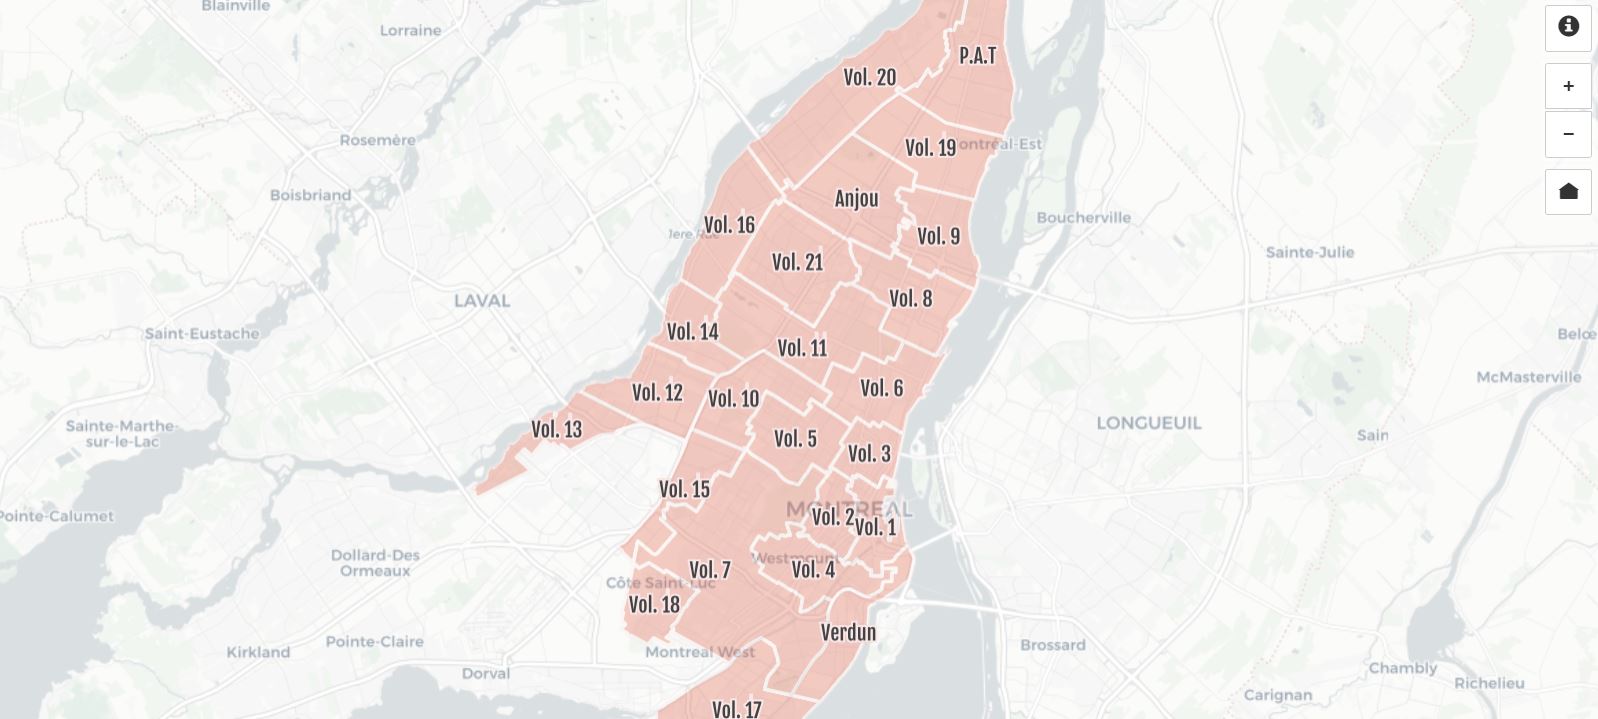 Visuel de la Carte-index des plans d'assurance-incendie de Montréal